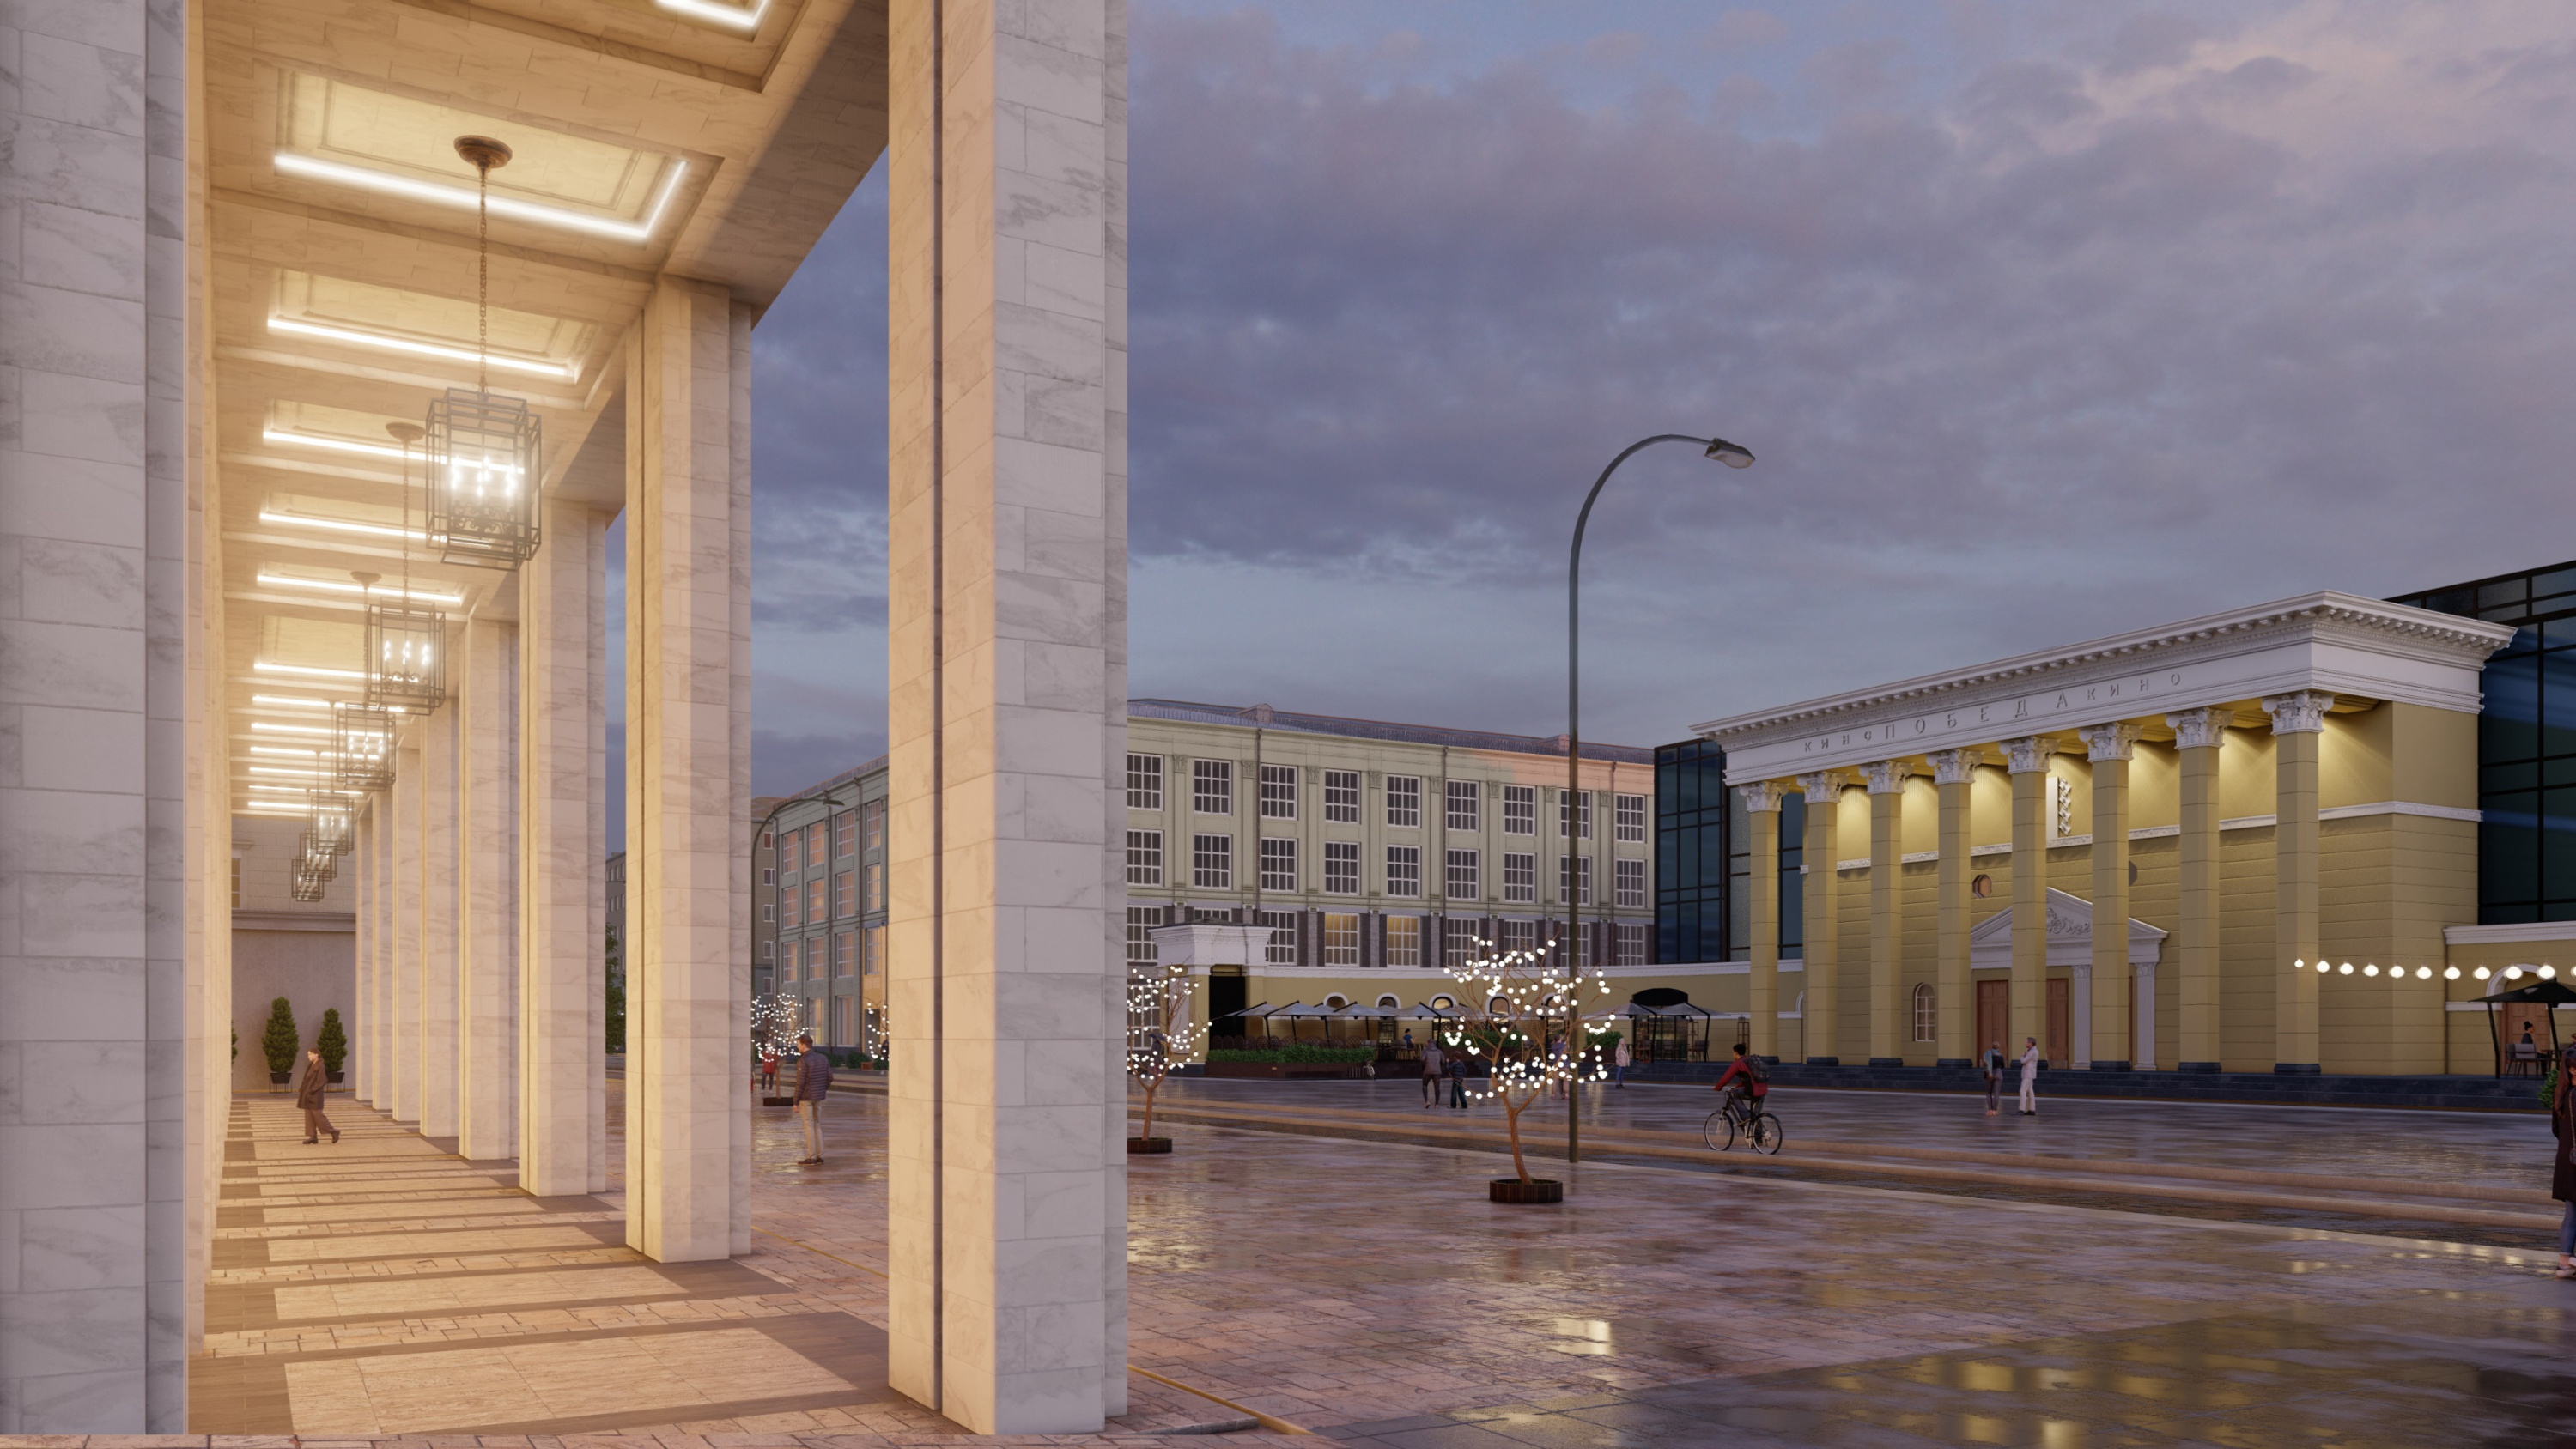 В ближайшие годы улицу должны реконструировать по проекту, придуманному КБ Strelka совместно с новосибирскими архитекторами. Реконструкция «Универсама» же может стимулировать город отказаться как минимум от бесплатных парковок здесь